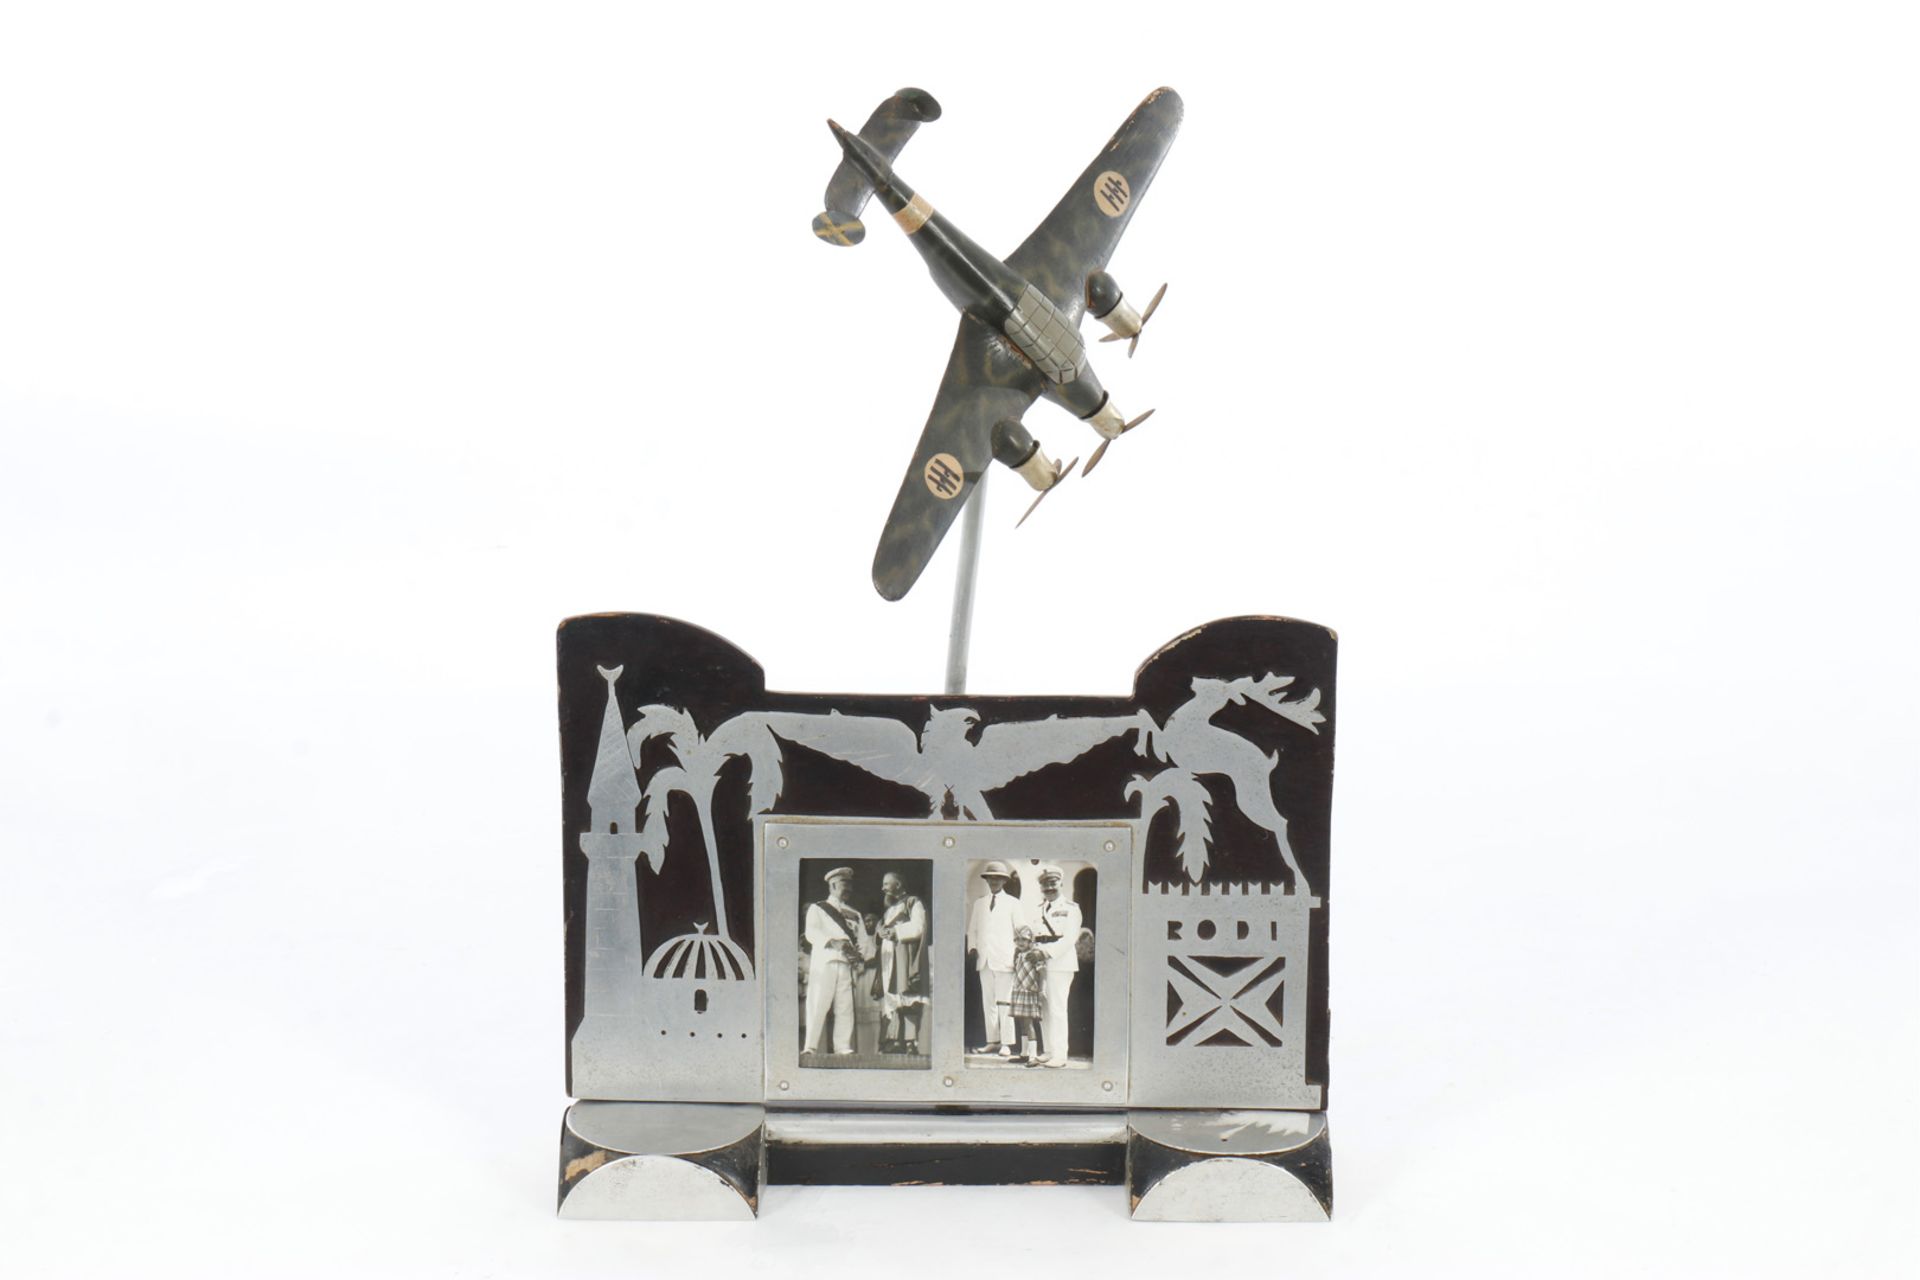 Modell eines ital. Jadflugzeugs, 30er Jahre, Holz/Alu, auf Ständer mit Bilderrahmen, L 30